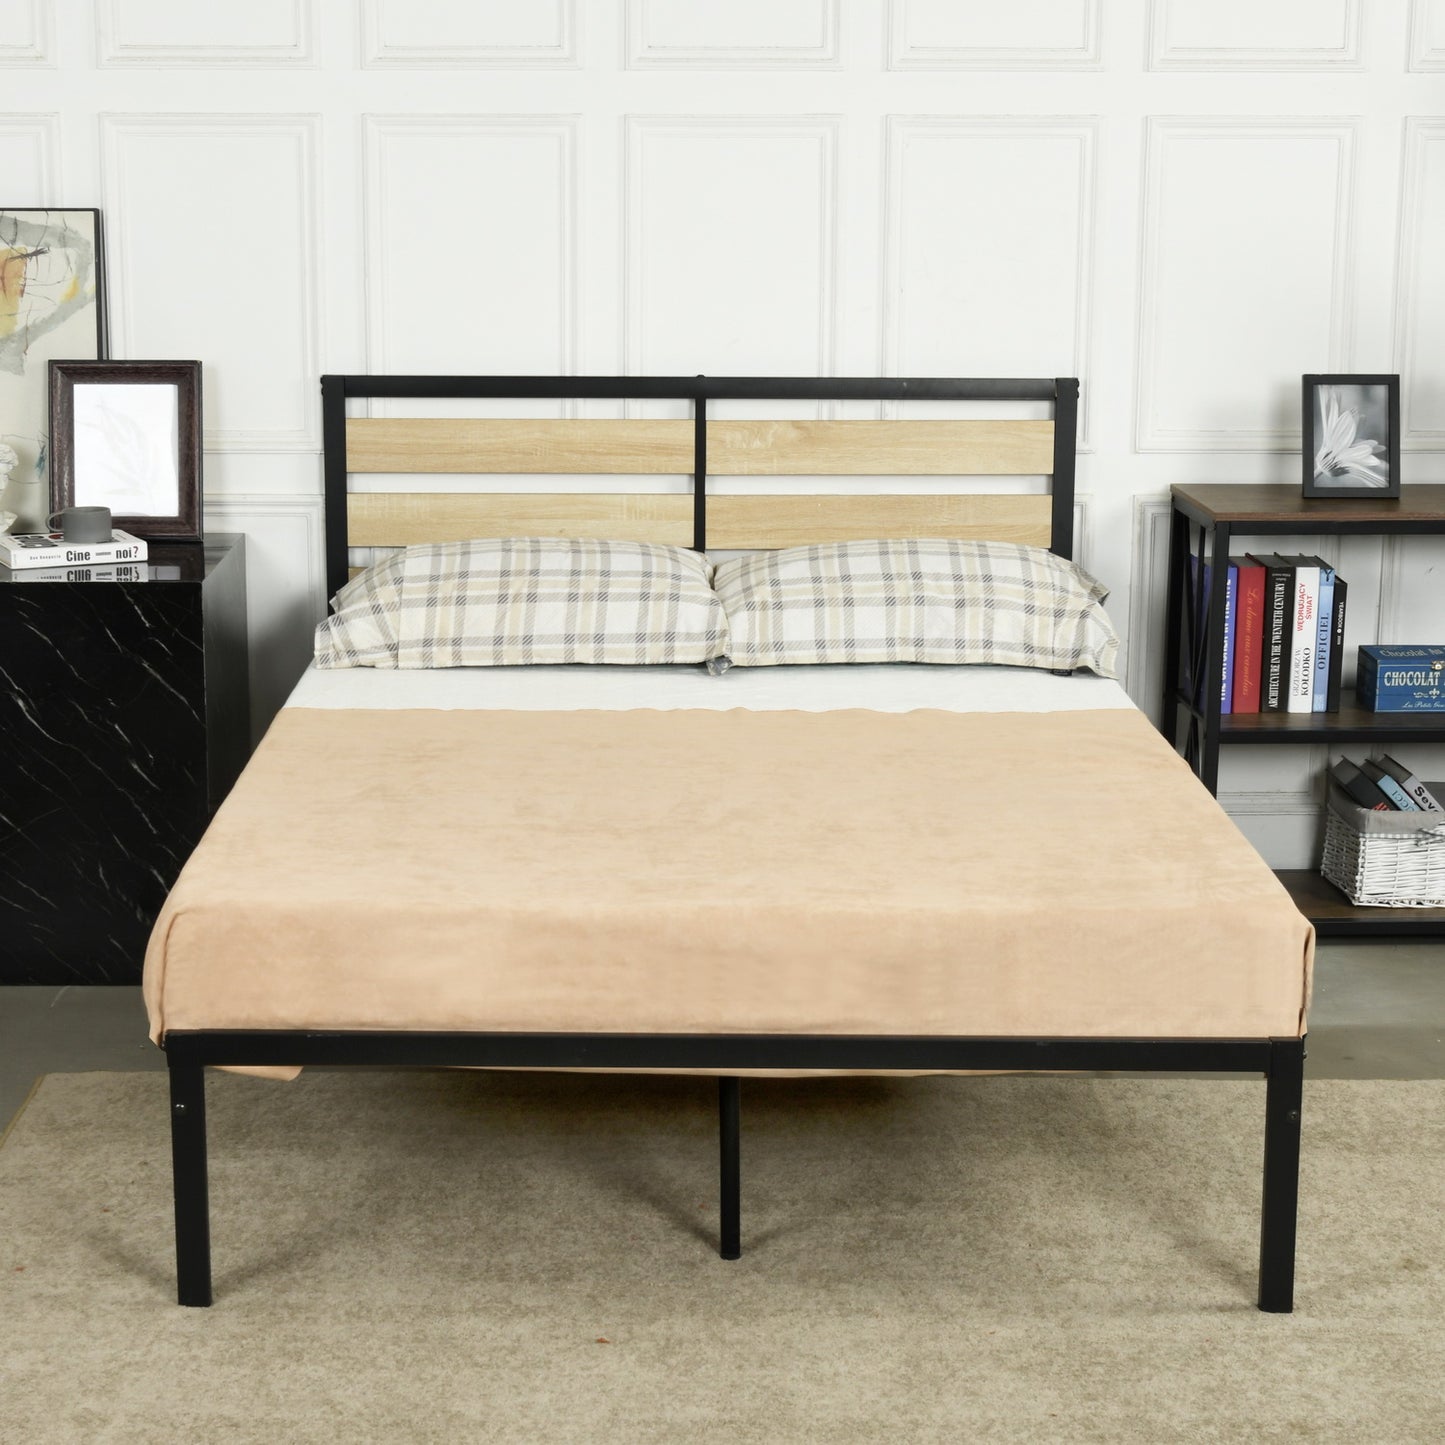 SOROLY Double Metal Bed 140*195.5cm - Black